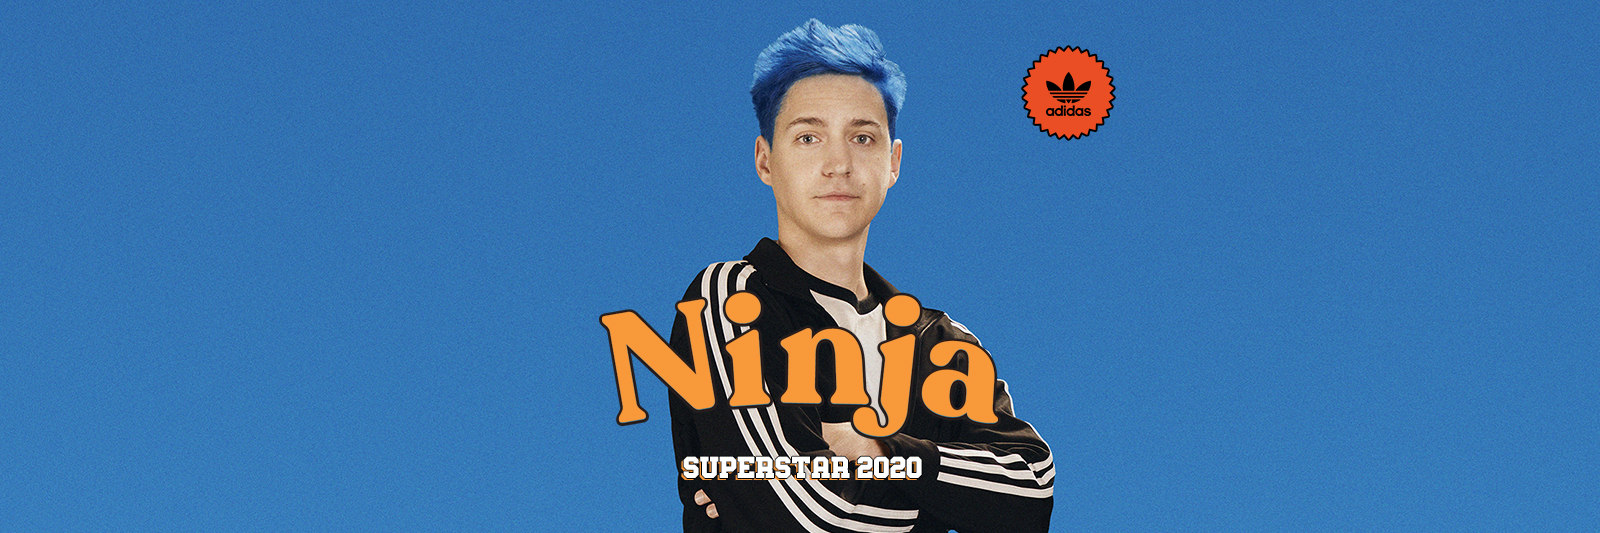 adidas originals ninja